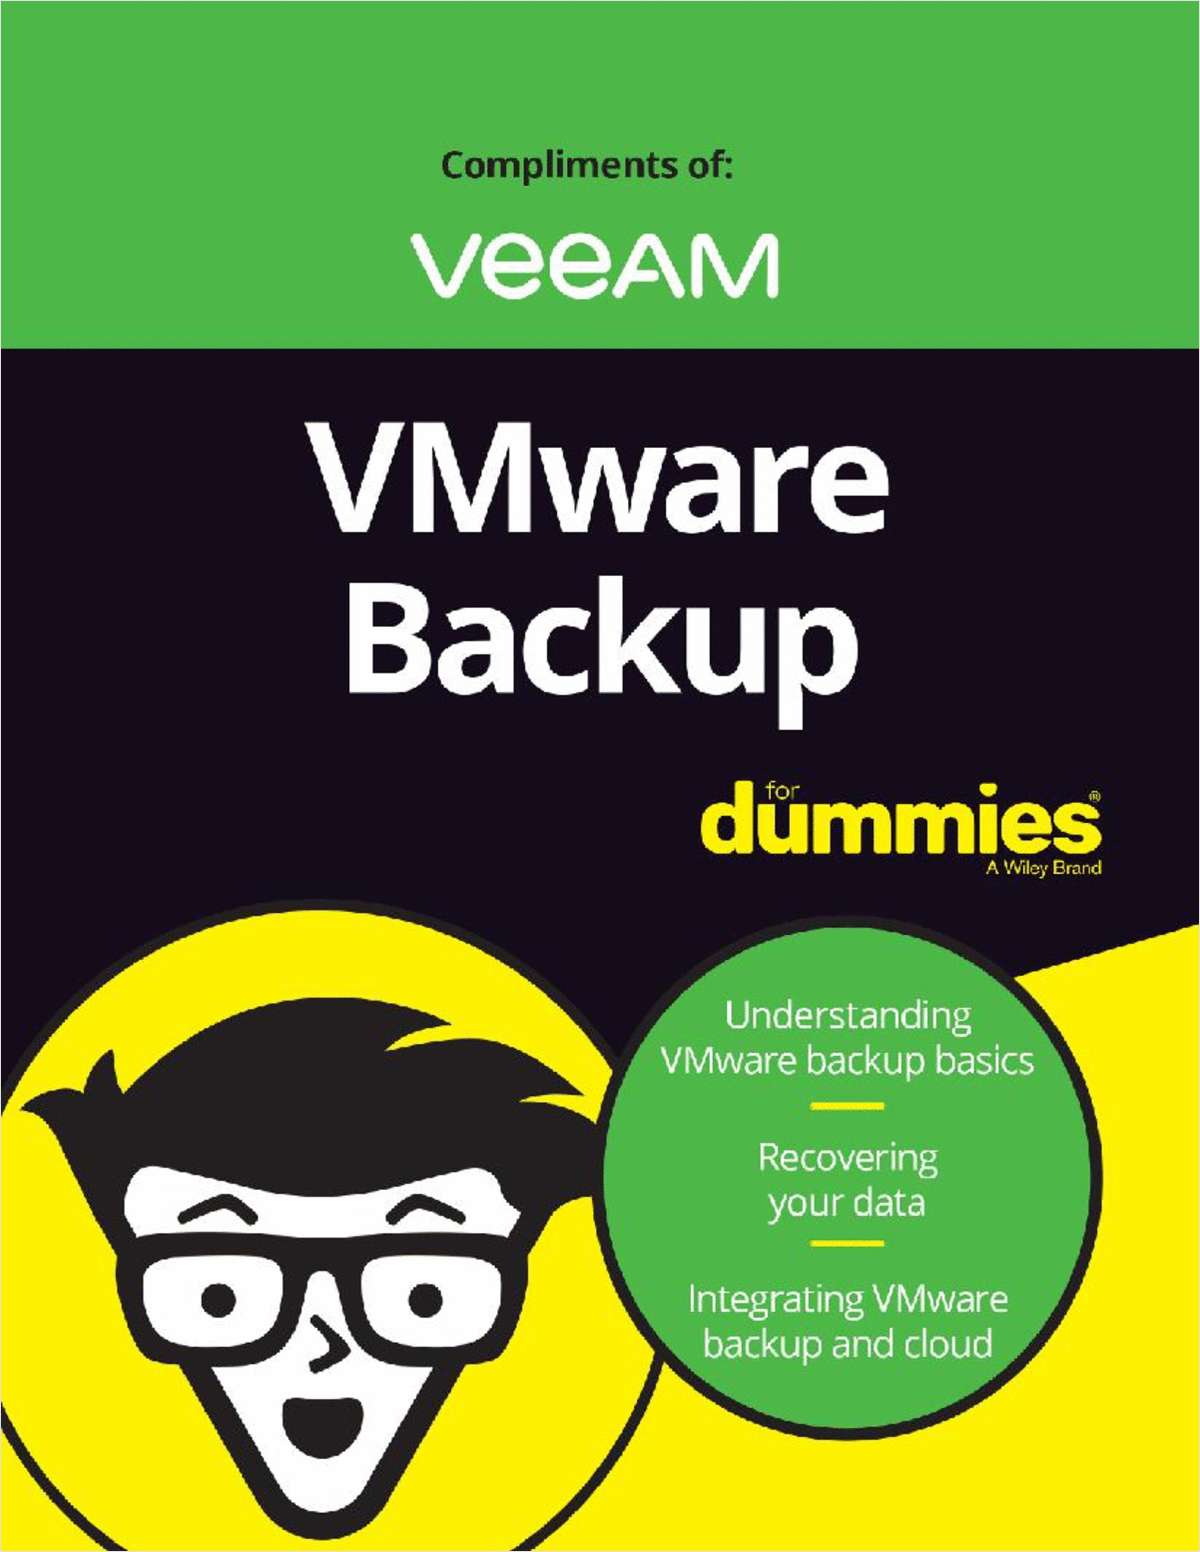 VMware Backup For Dummies